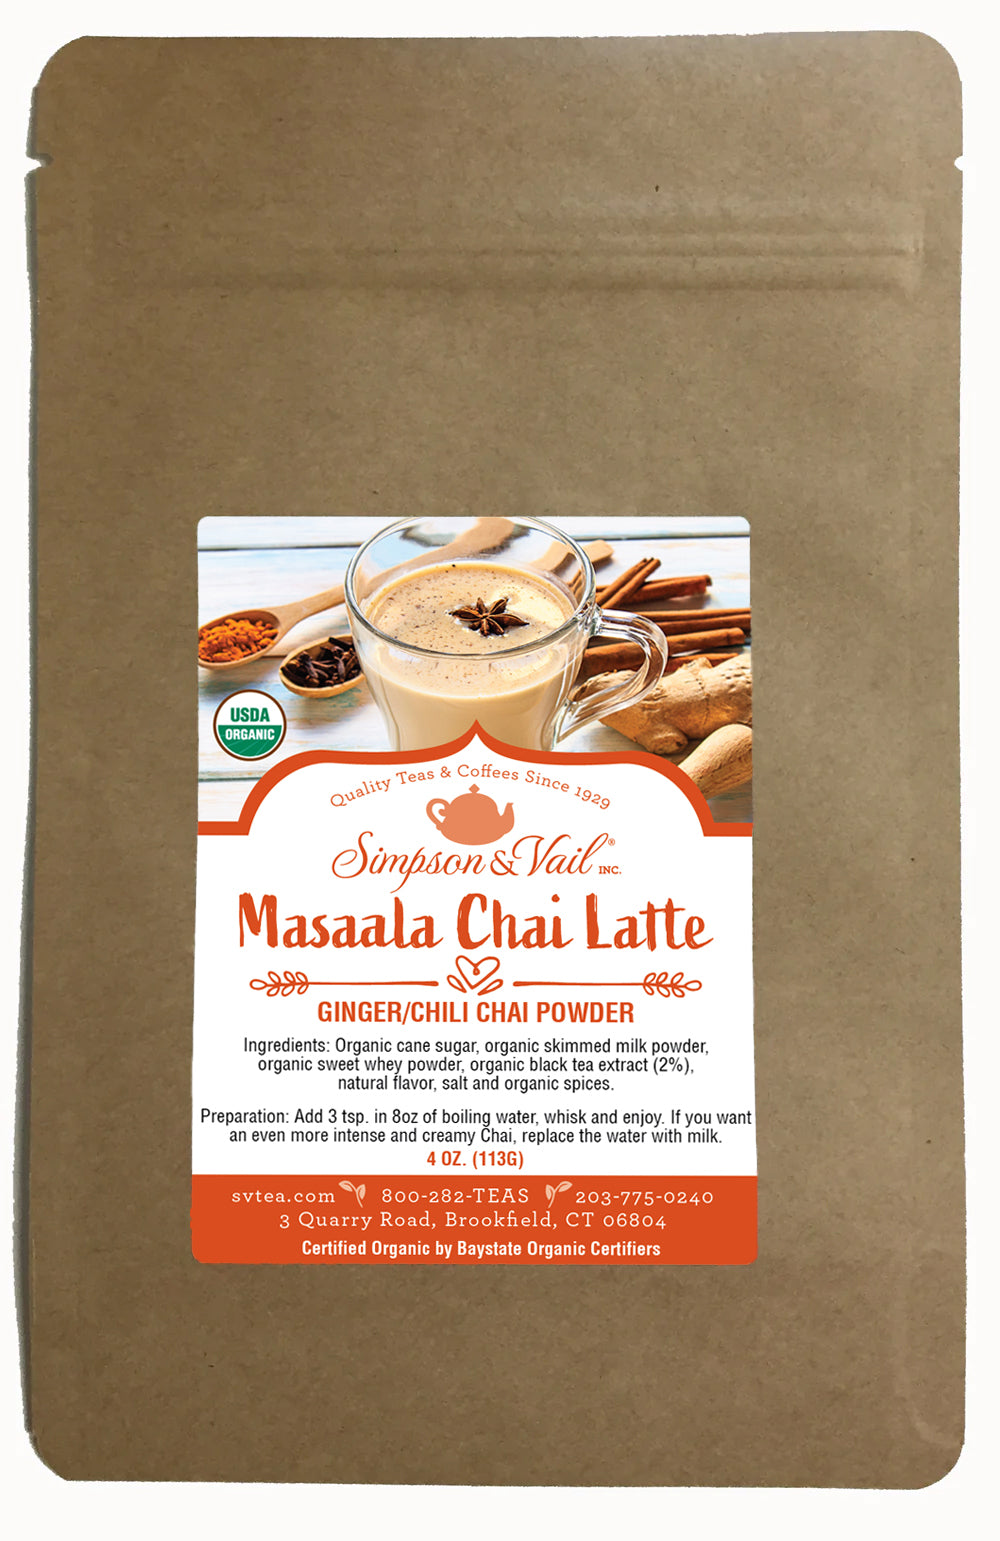 Masaala Chai Latte - Organic - Ginger/Chili Chai Powder, 4oz pkg - WS